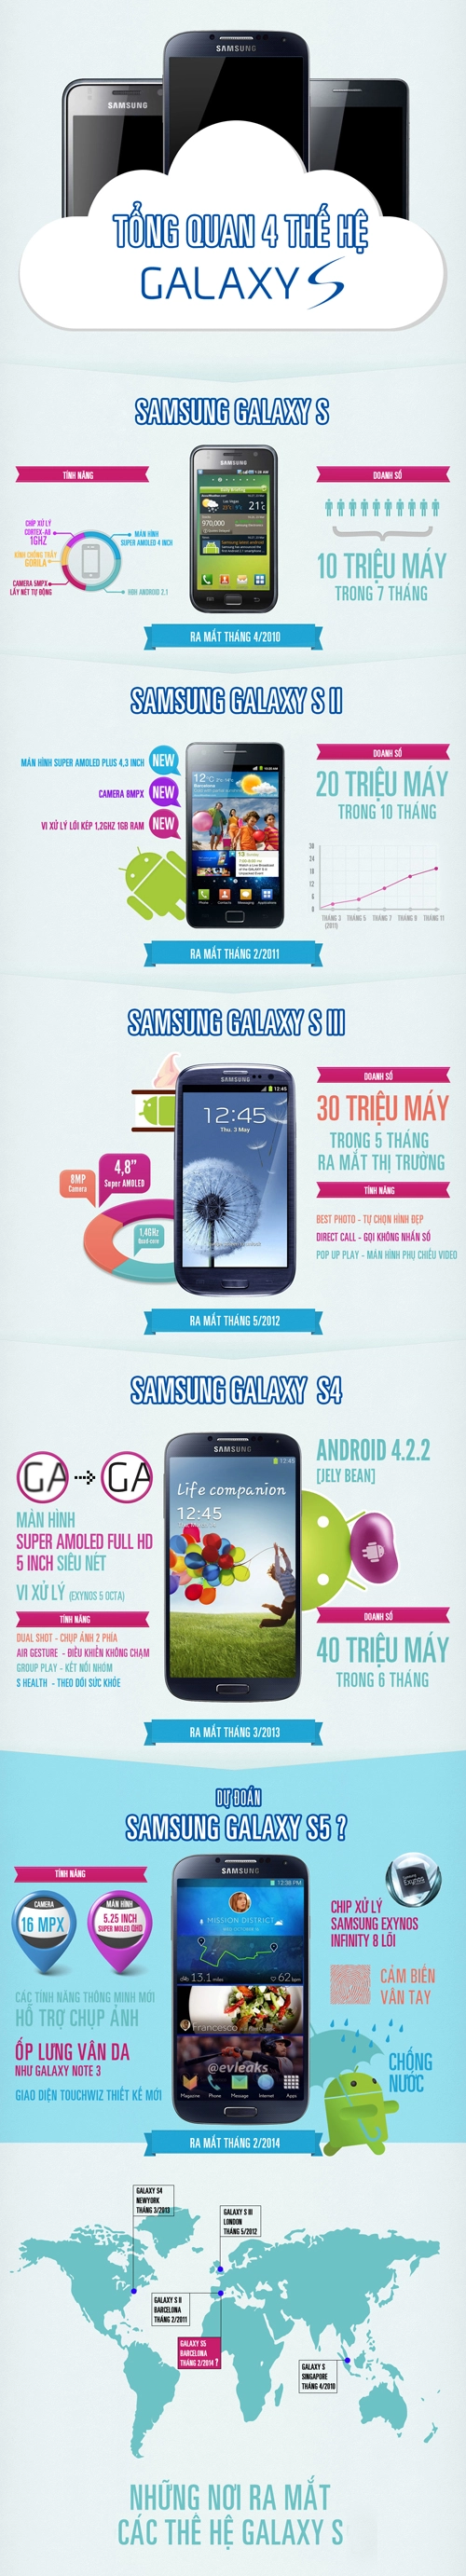 Dấu ấn 4 thế hệ smartphone galaxy s của samsung - 1